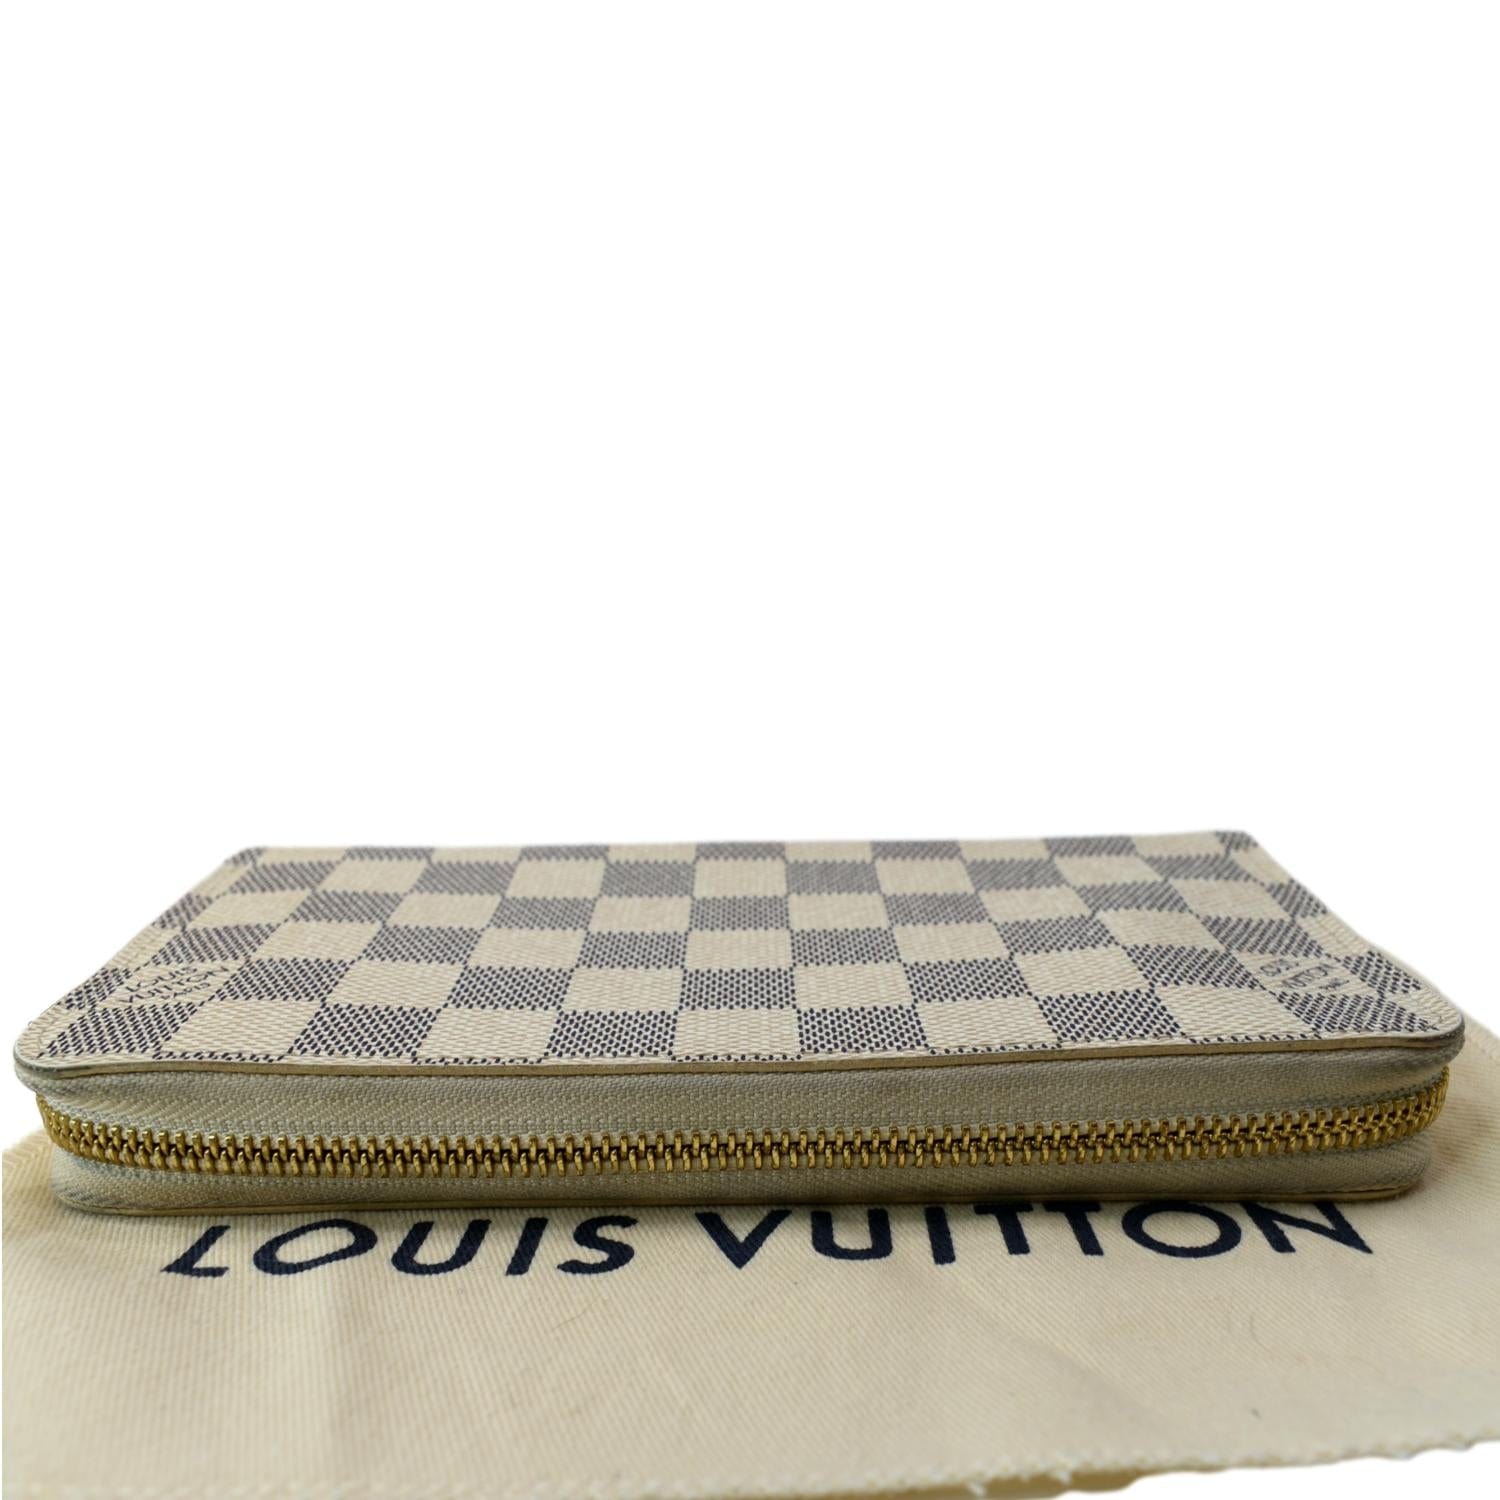 Louis Vuitton Vintage Damier Azur Pattern Zippy Compact Wallet